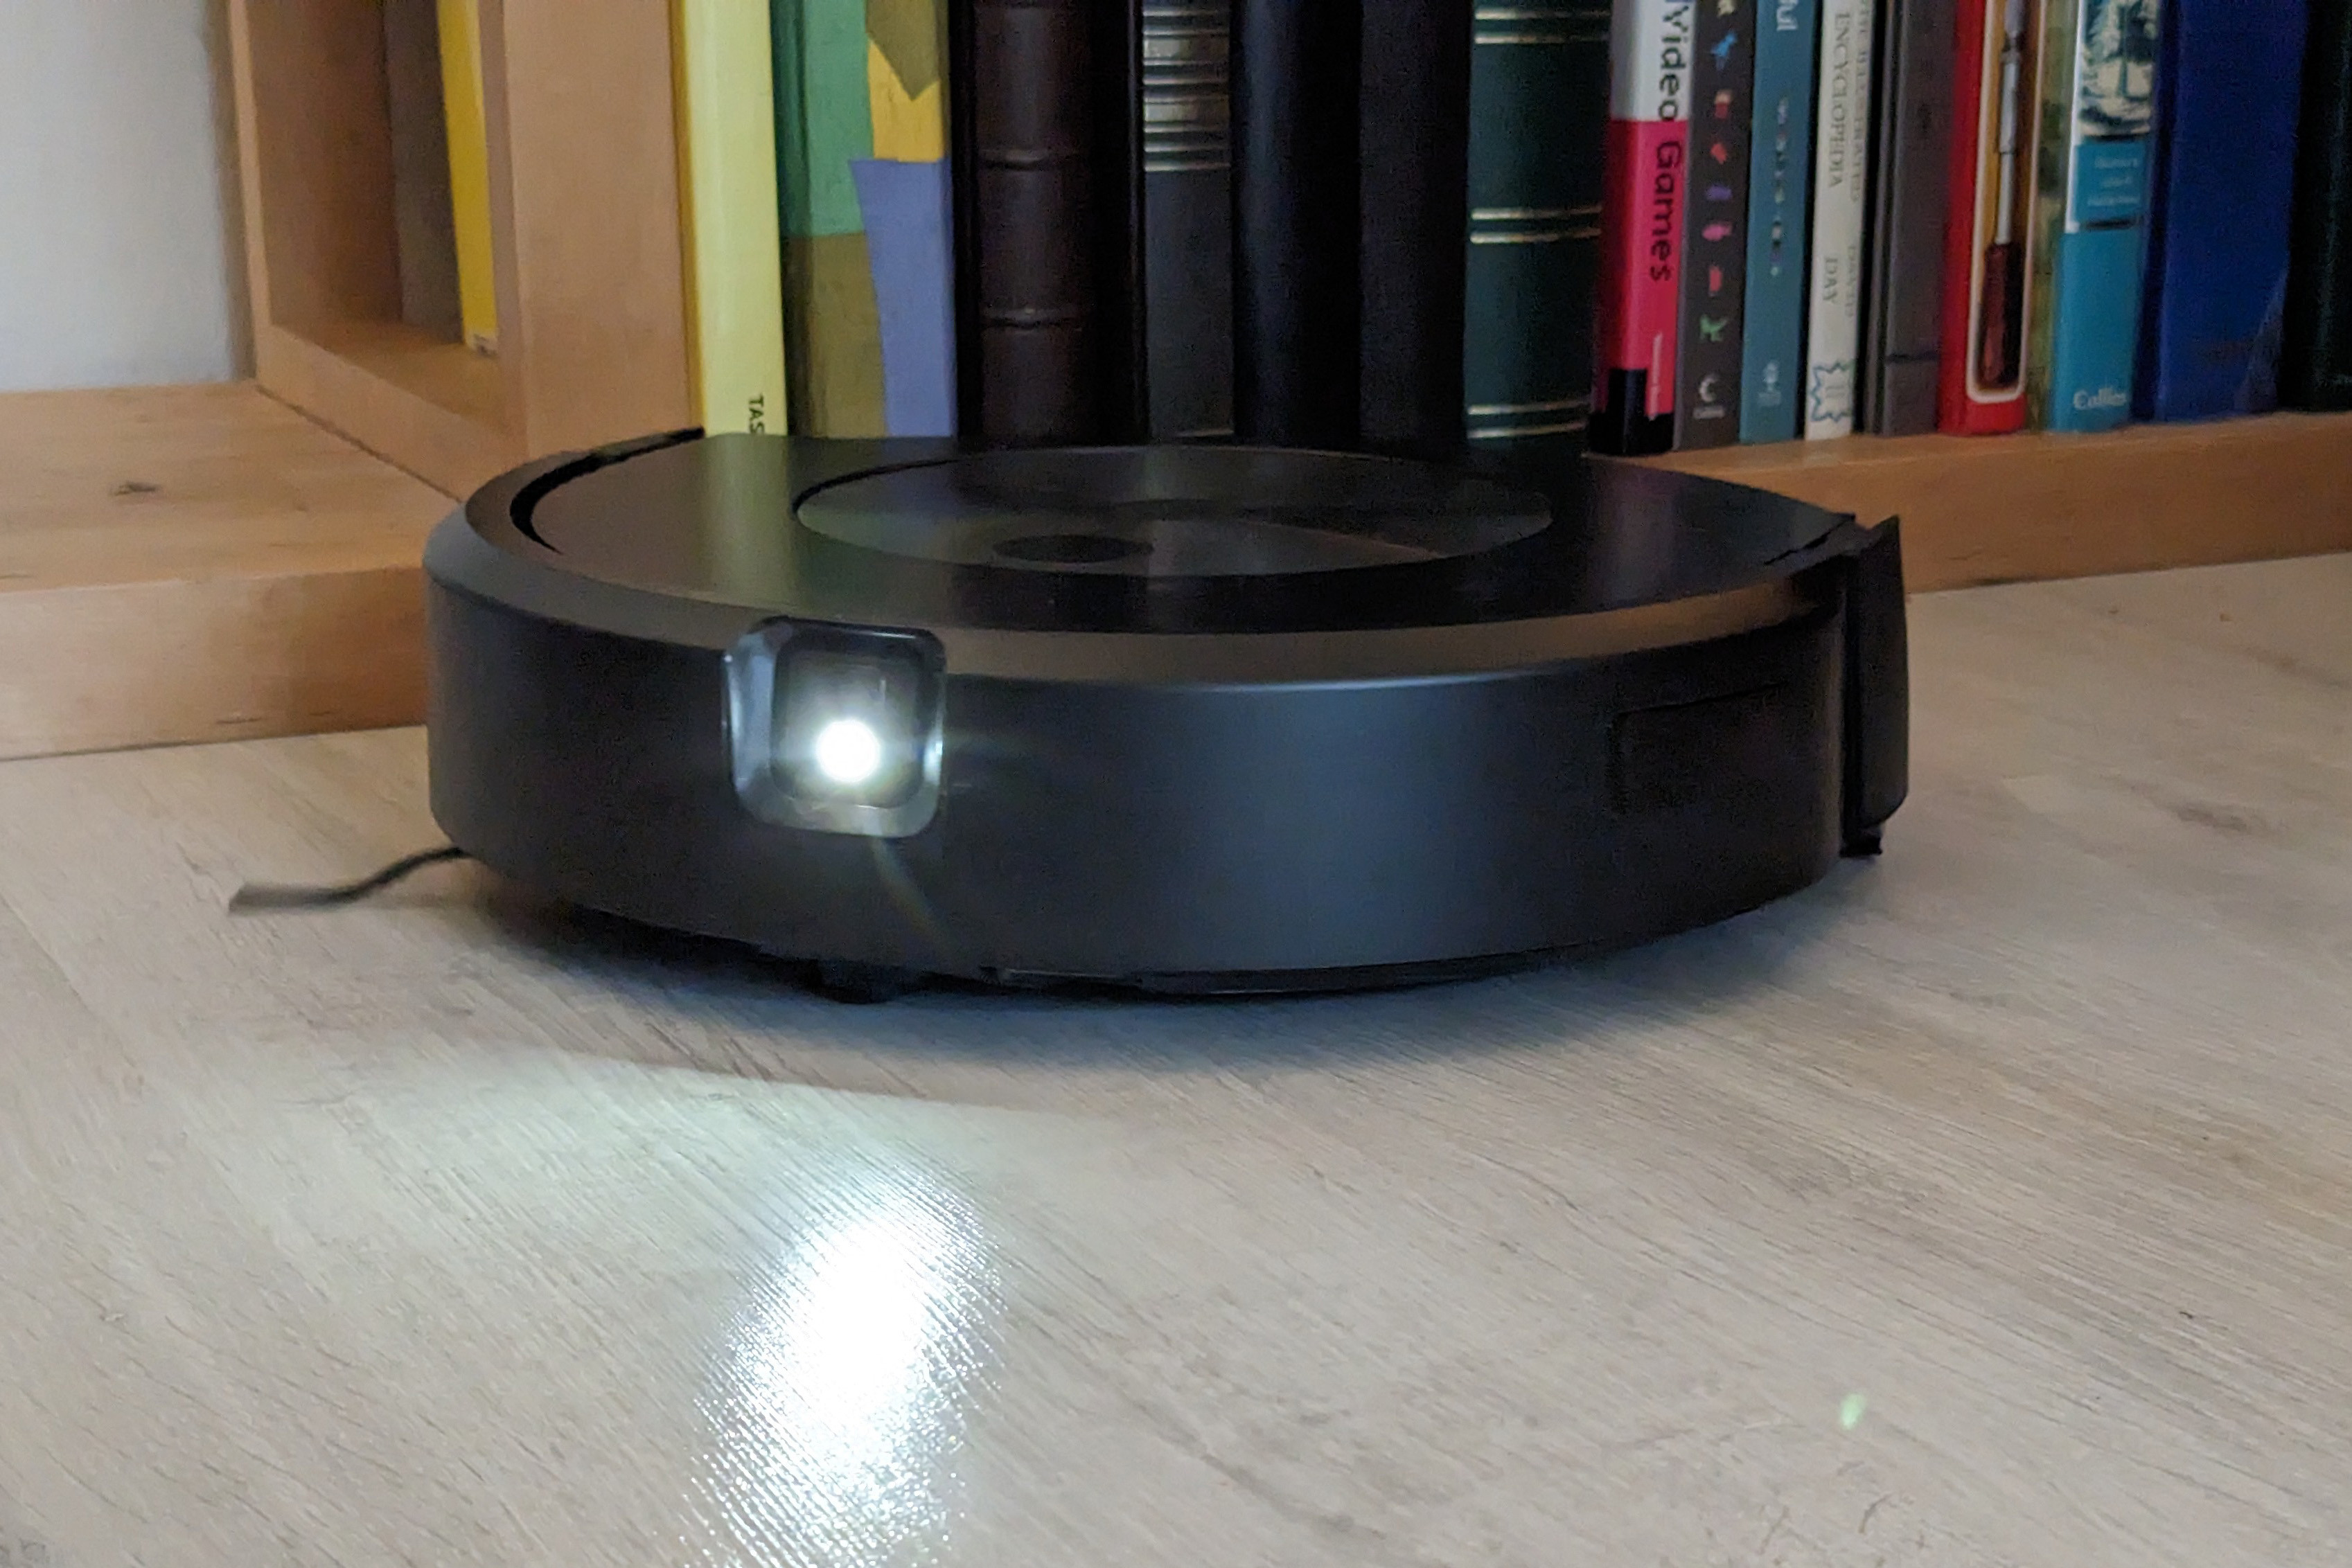 springen Commissie Paradox iRobot Roomba Combo j7+ review: volautomatisch zuigen én dweilen | TechFi